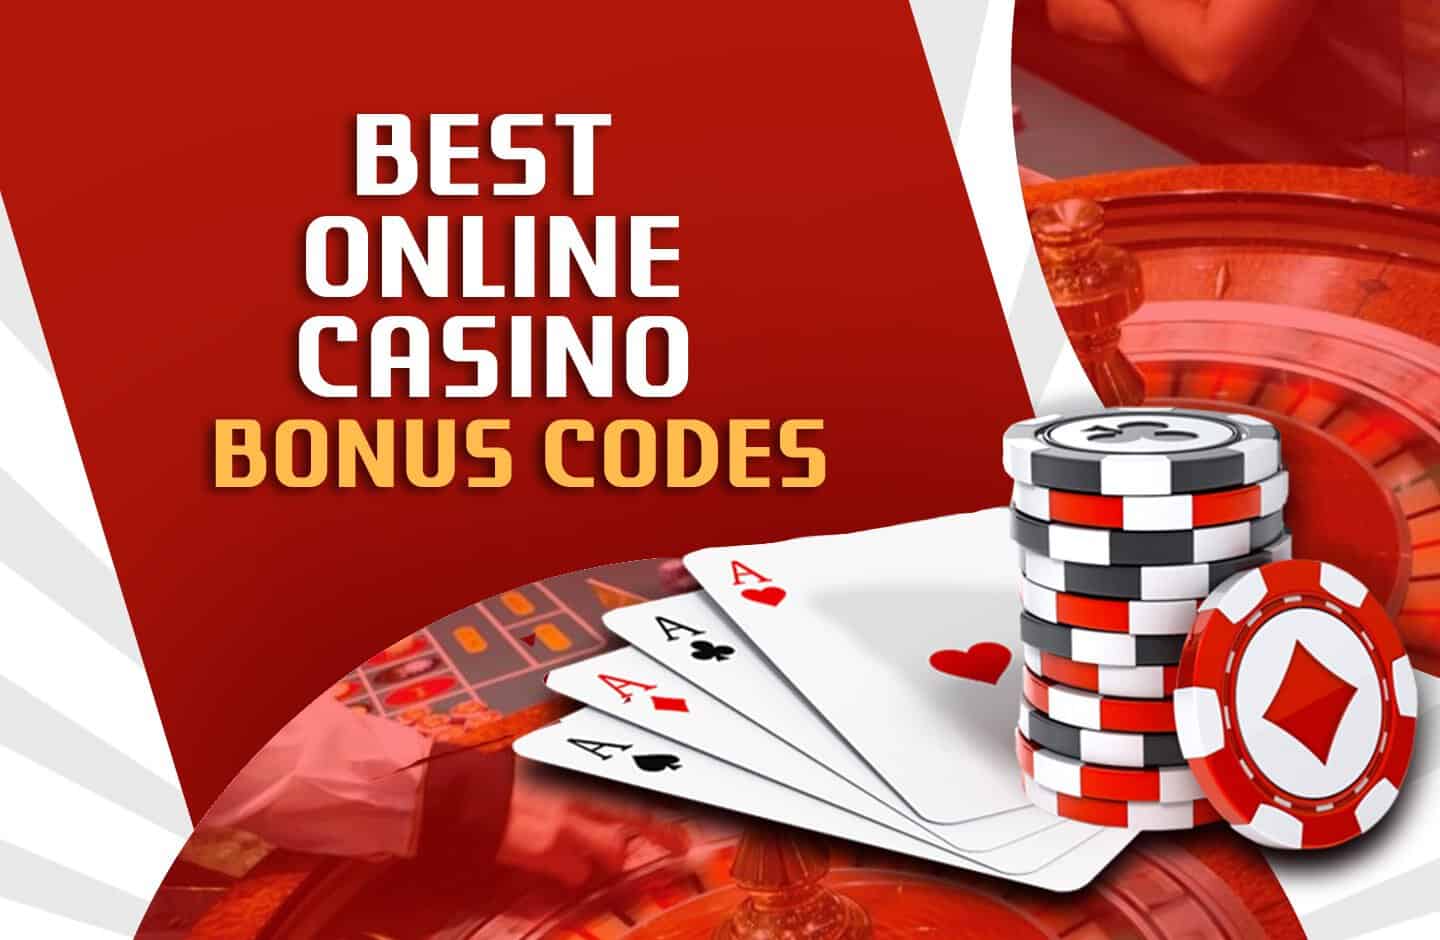 Online Casino Echtgeld: Halten Sie es einfach